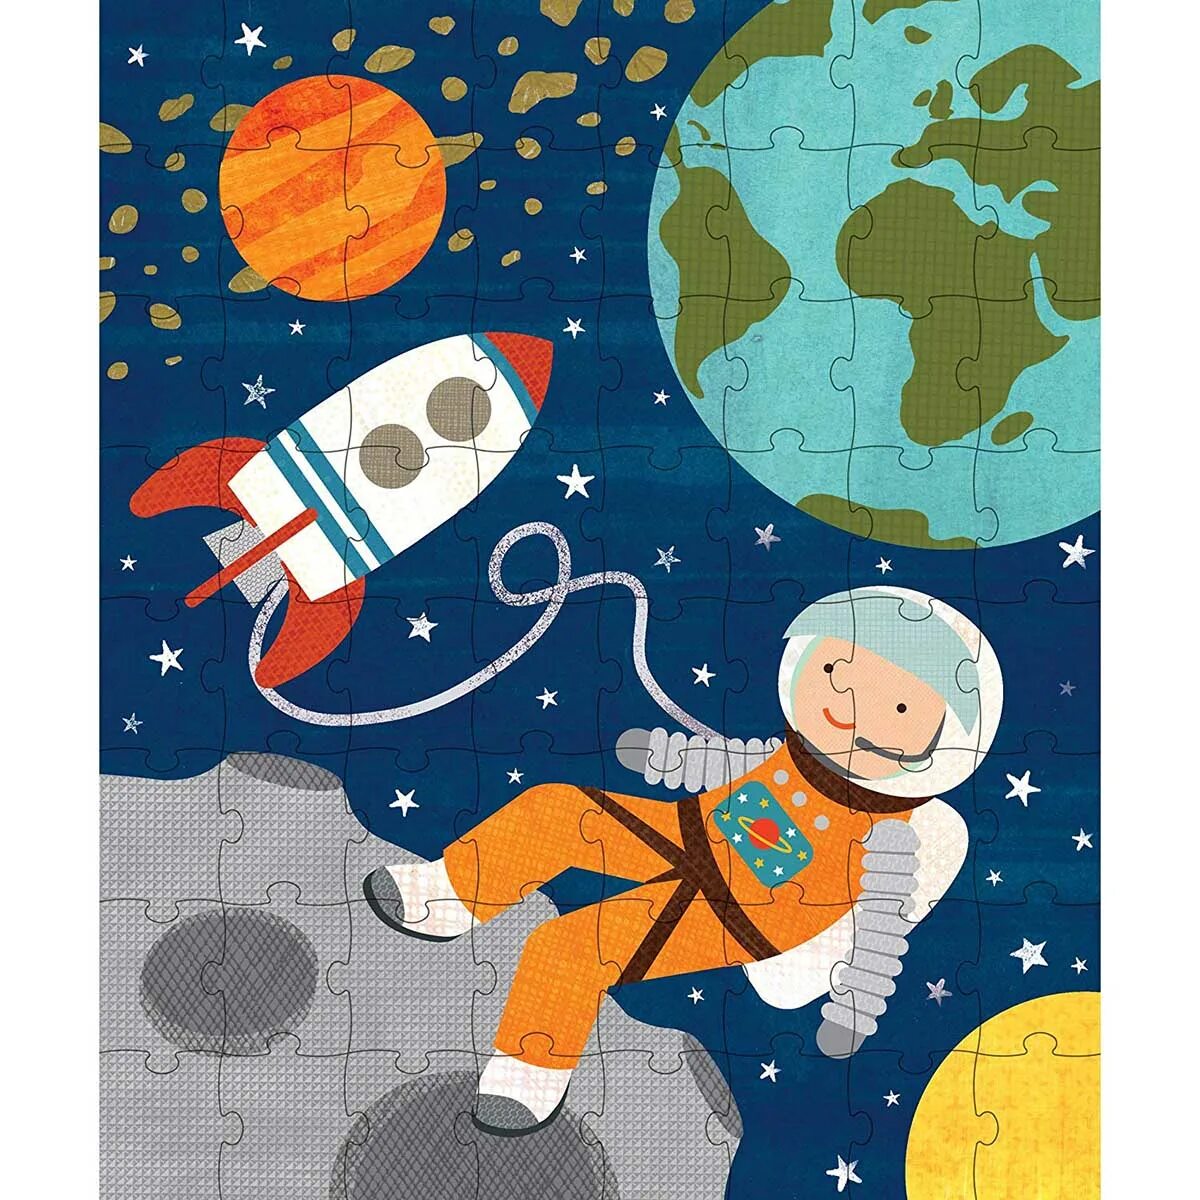 Картинки на тему космос для дошкольников. Пазлы космос для детей. Пазлы на тему космос для детей. Пазлы про космос для дошкольников. Космос для детей дошкольного возраста иллюстрации.